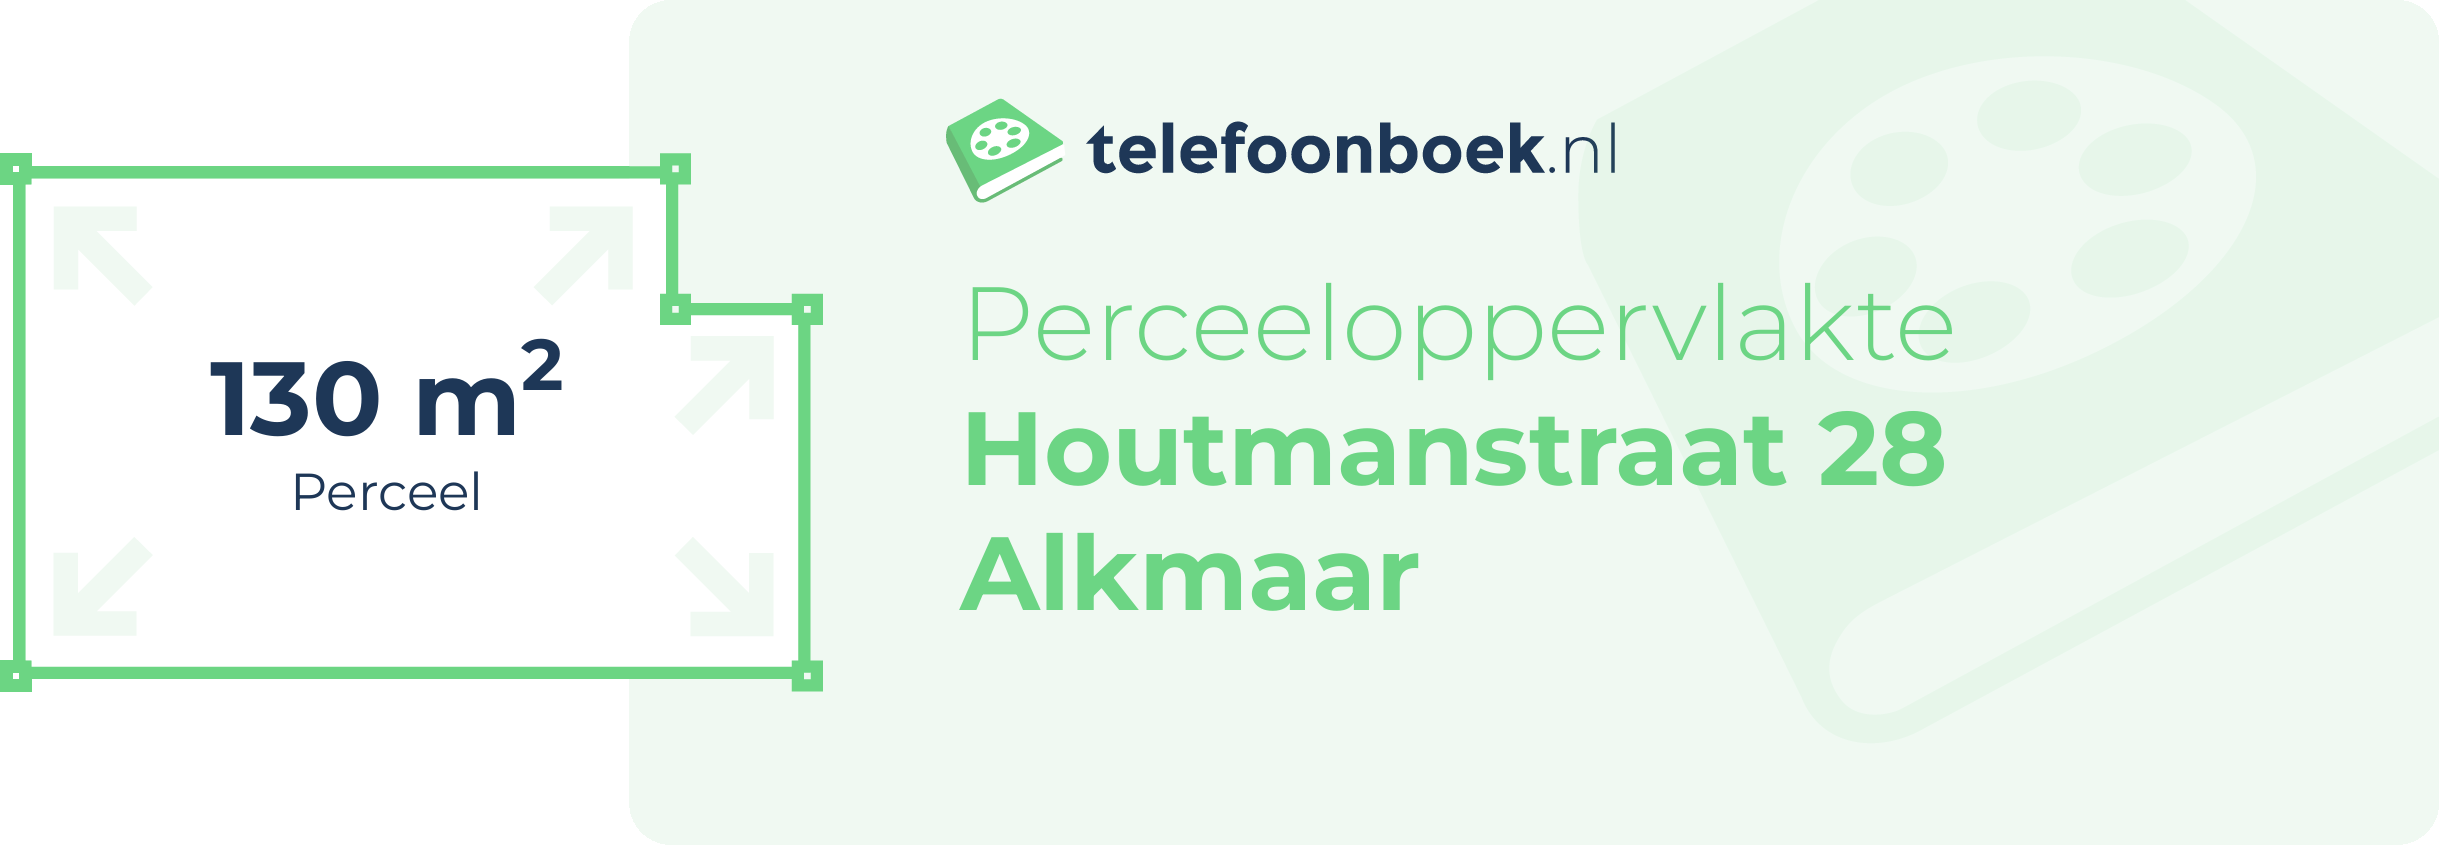 Perceeloppervlakte Houtmanstraat 28 Alkmaar